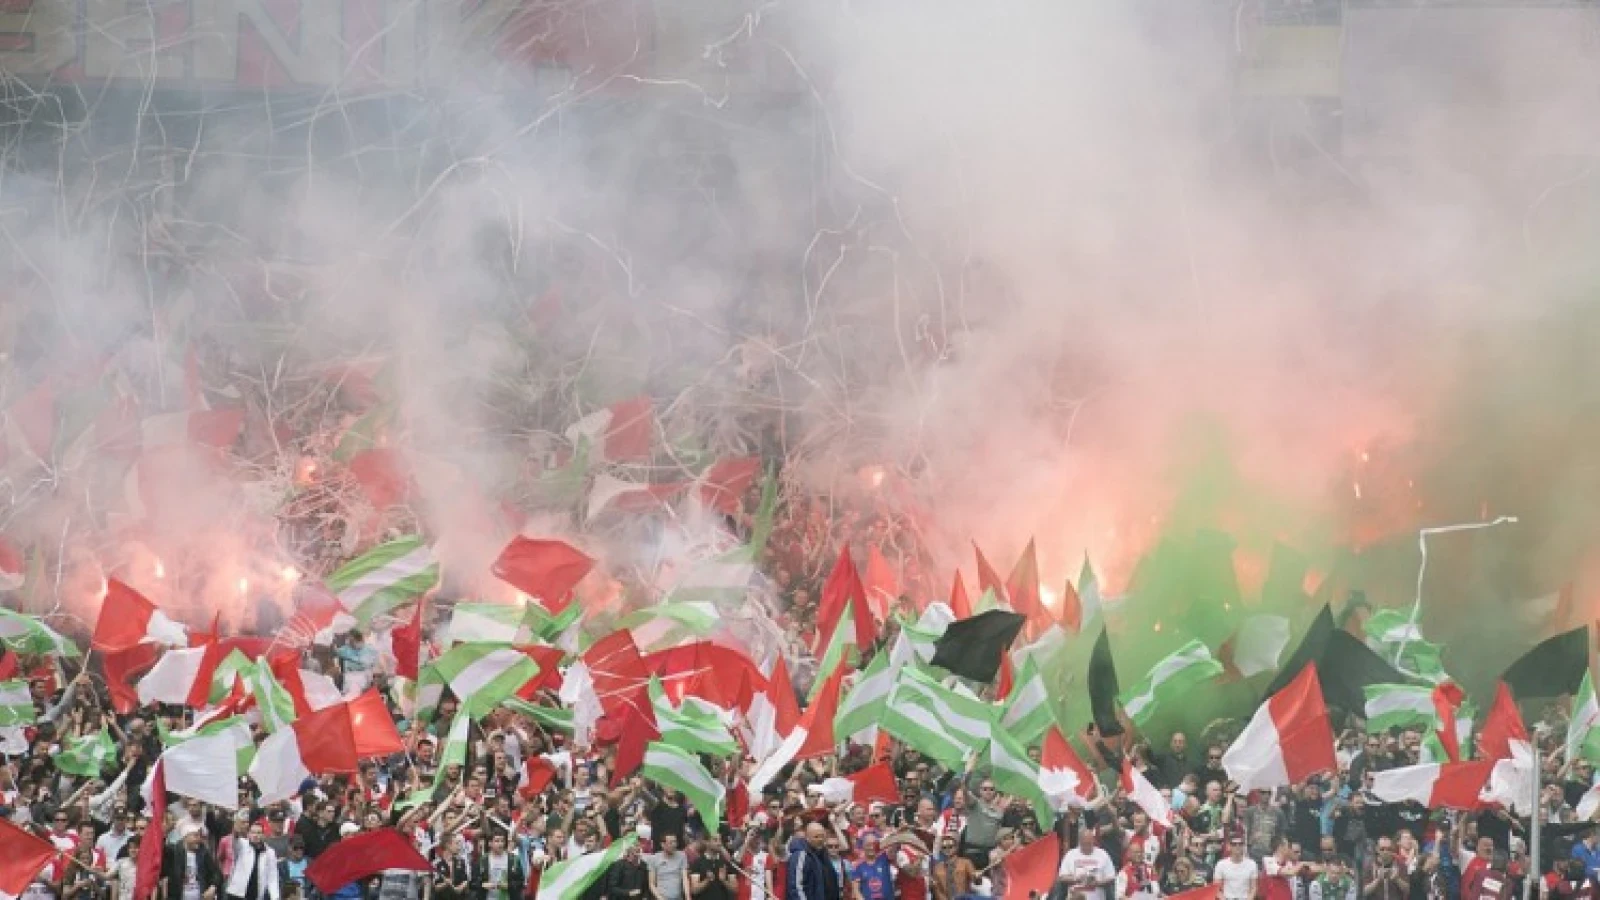 VIDEO | Spelers van AVV Swift uitzinnig van vreugde na loting tegen Feyenoord